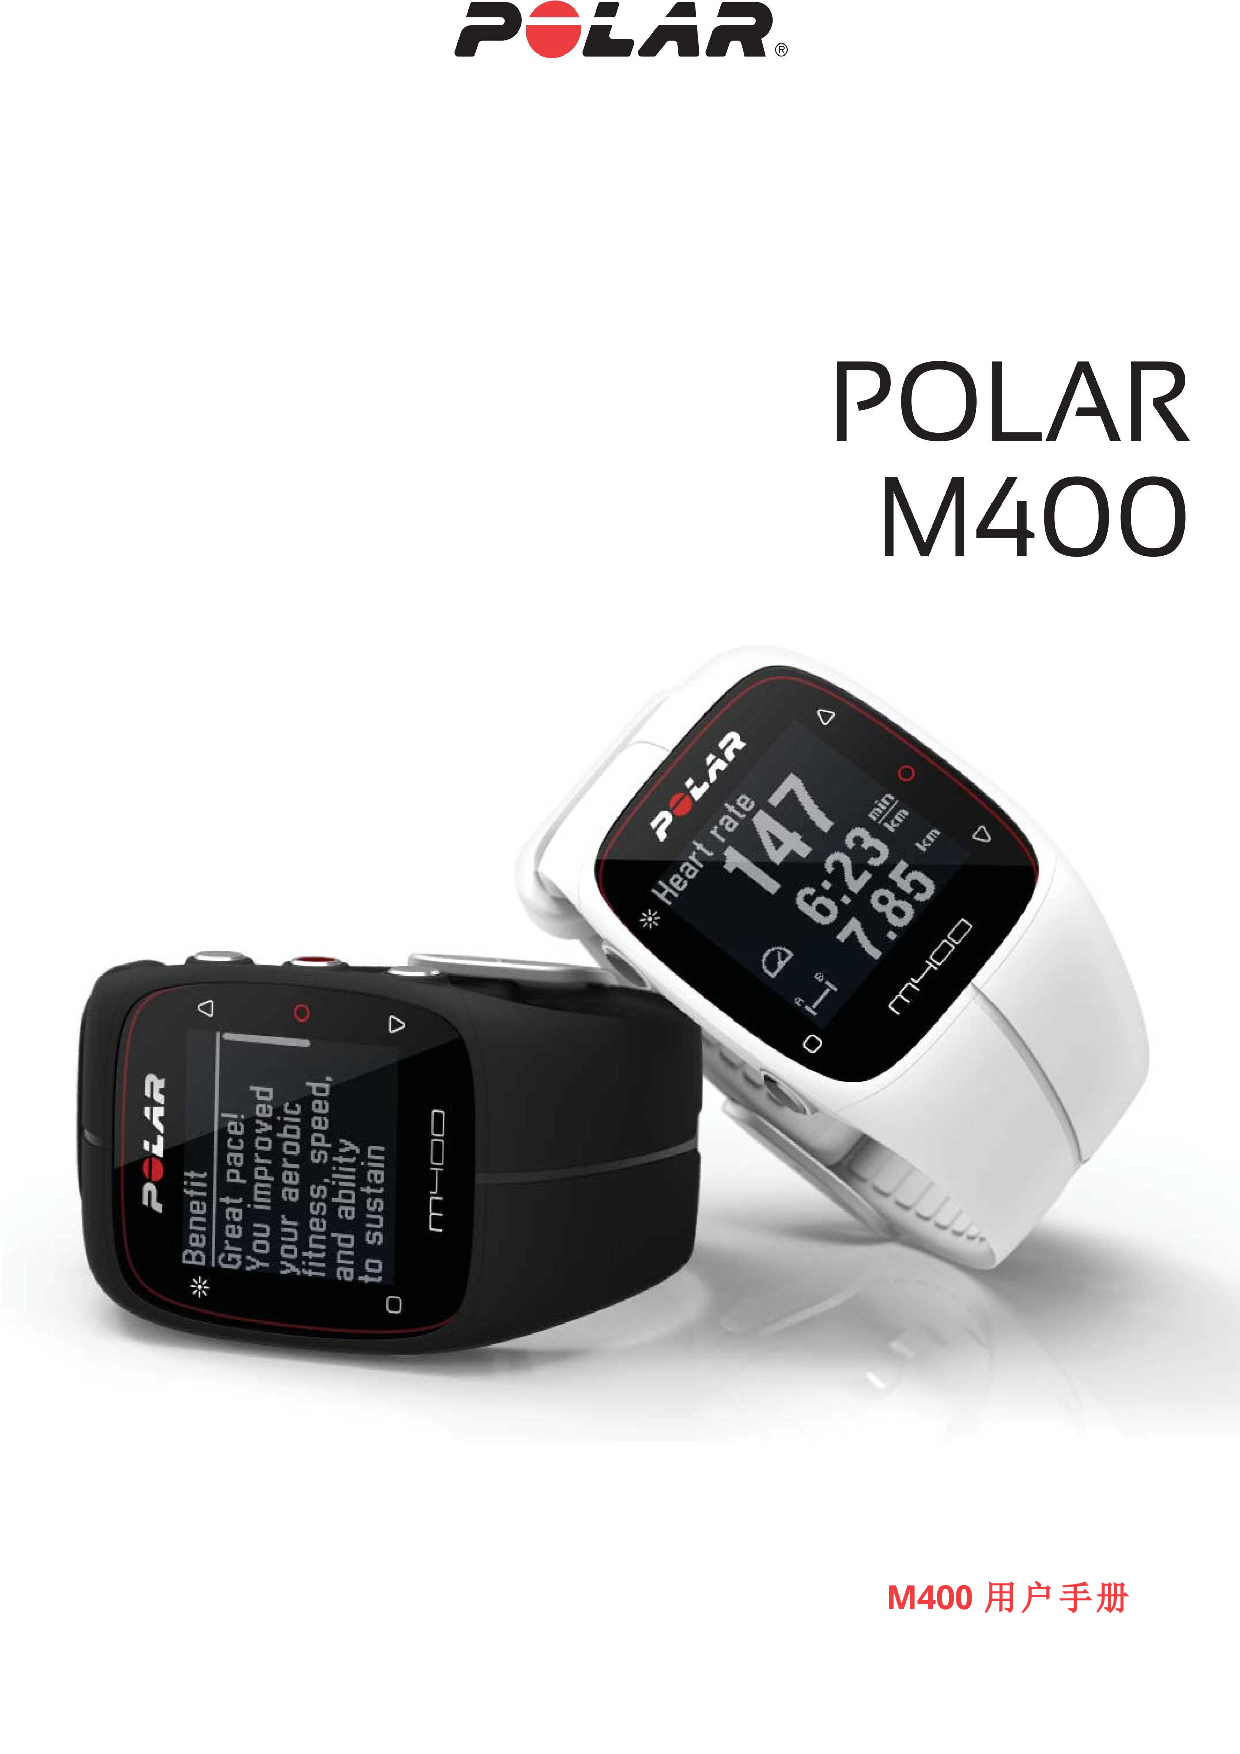 Polar M400 用户手册 封面